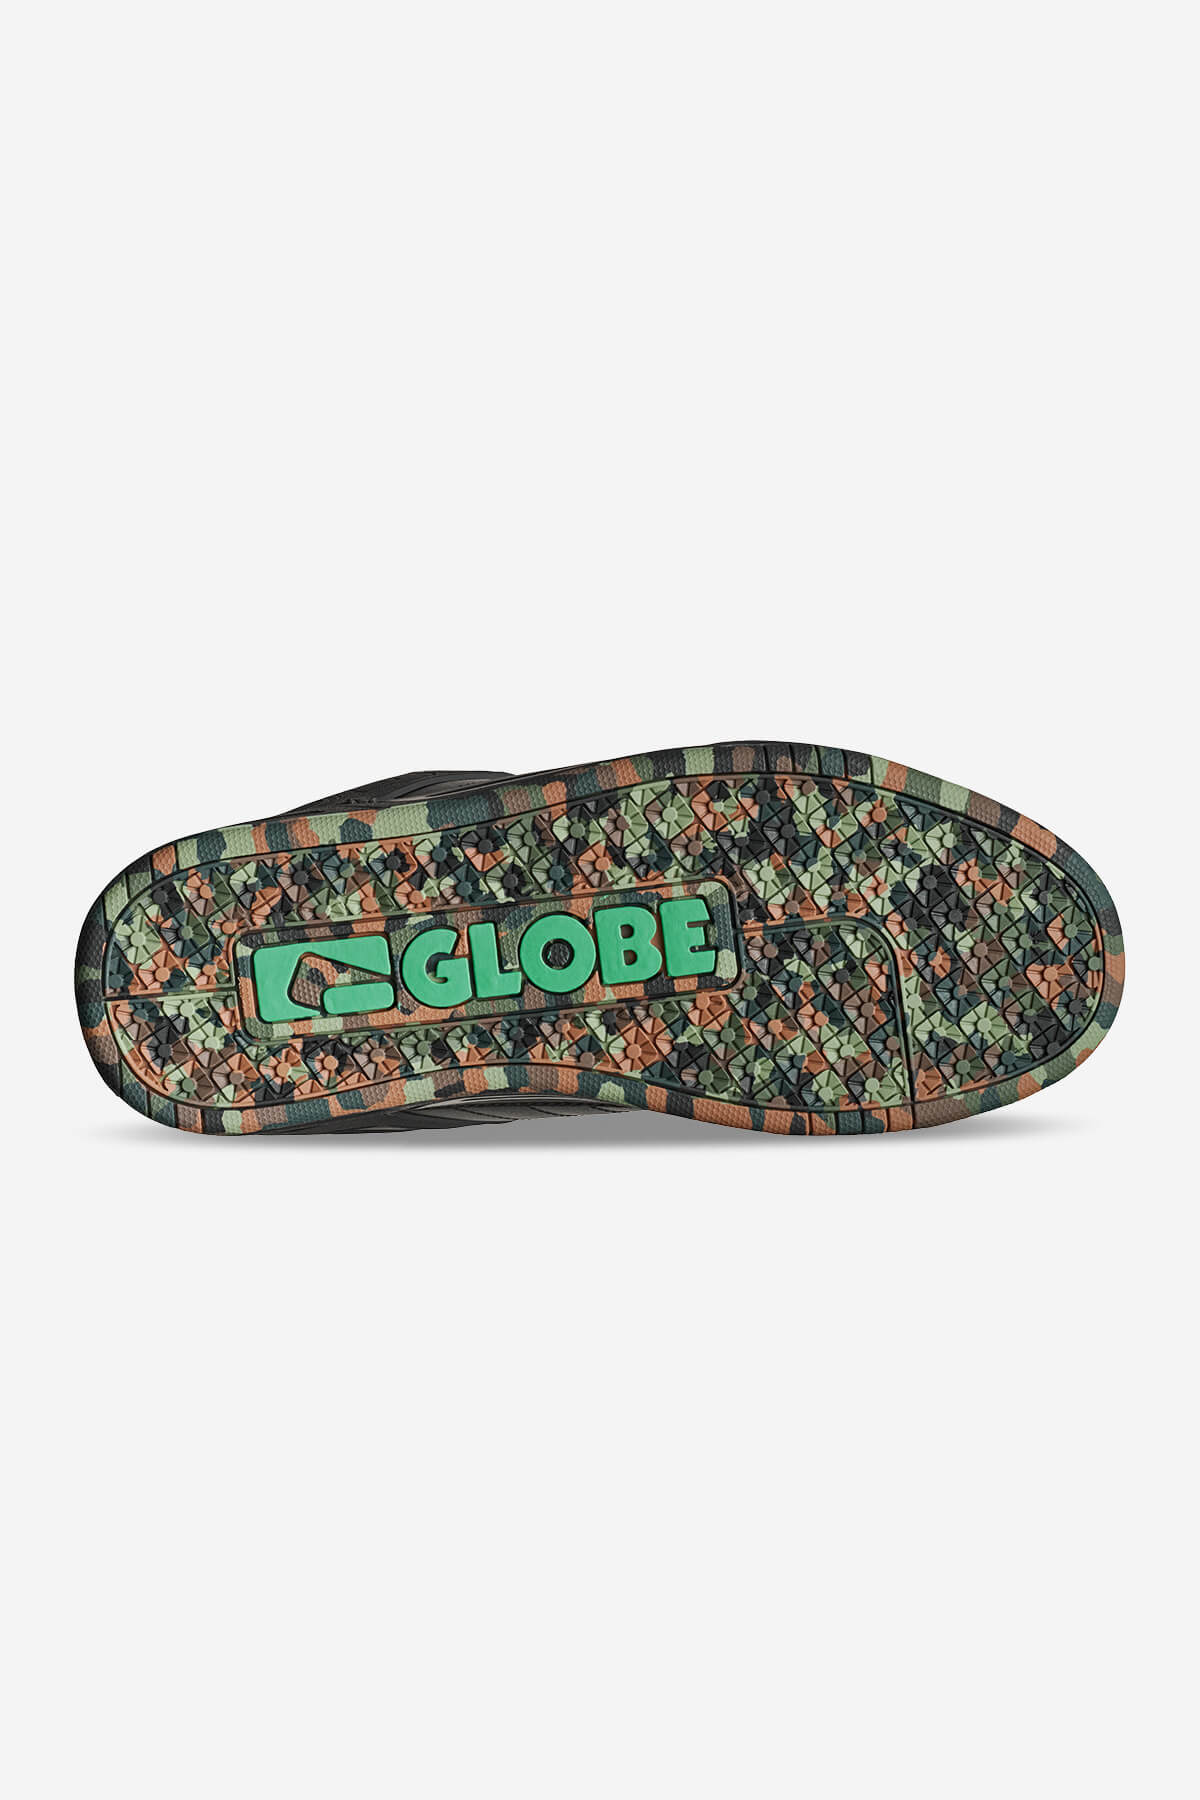 Globe - Tilt - Black/Green/Mosaik - skateboard Schuhe